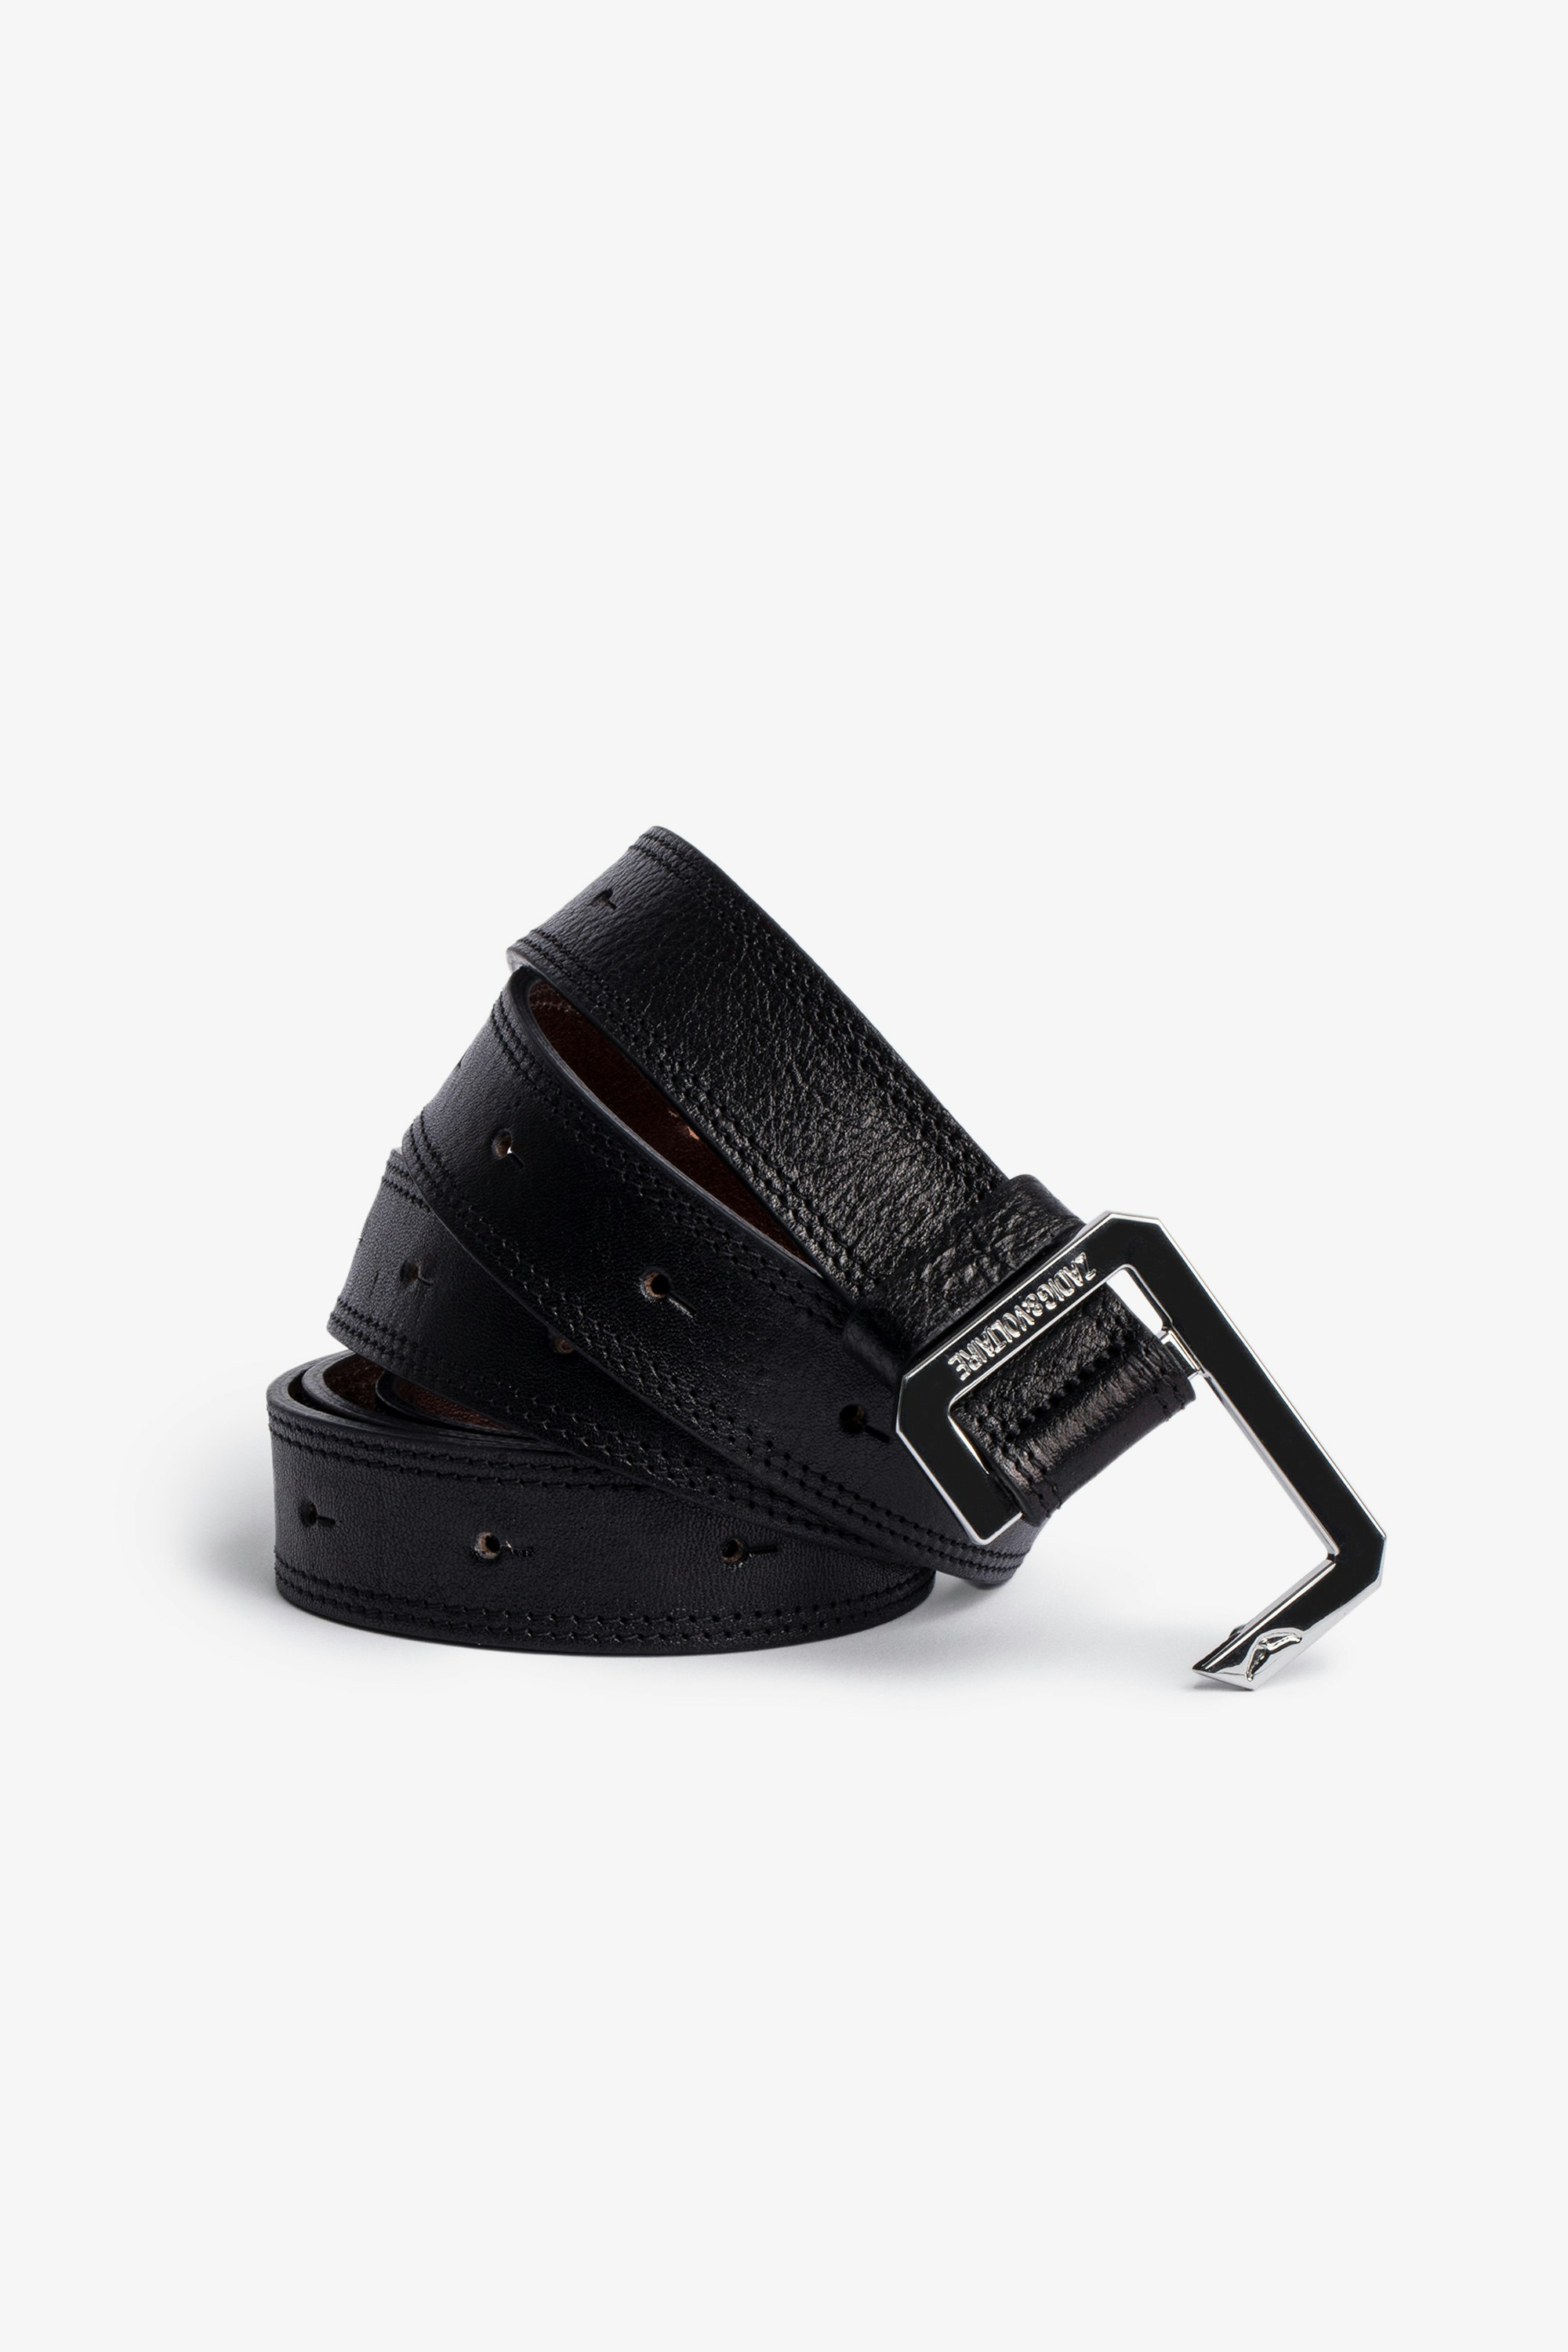 Cinturón La Cecilia Cuero Cinturón de mujer de piel negra con hebilla C metálica. Al comprar este producto, estás apoyando la producción de cuero responsable a través de Leather Working Group.